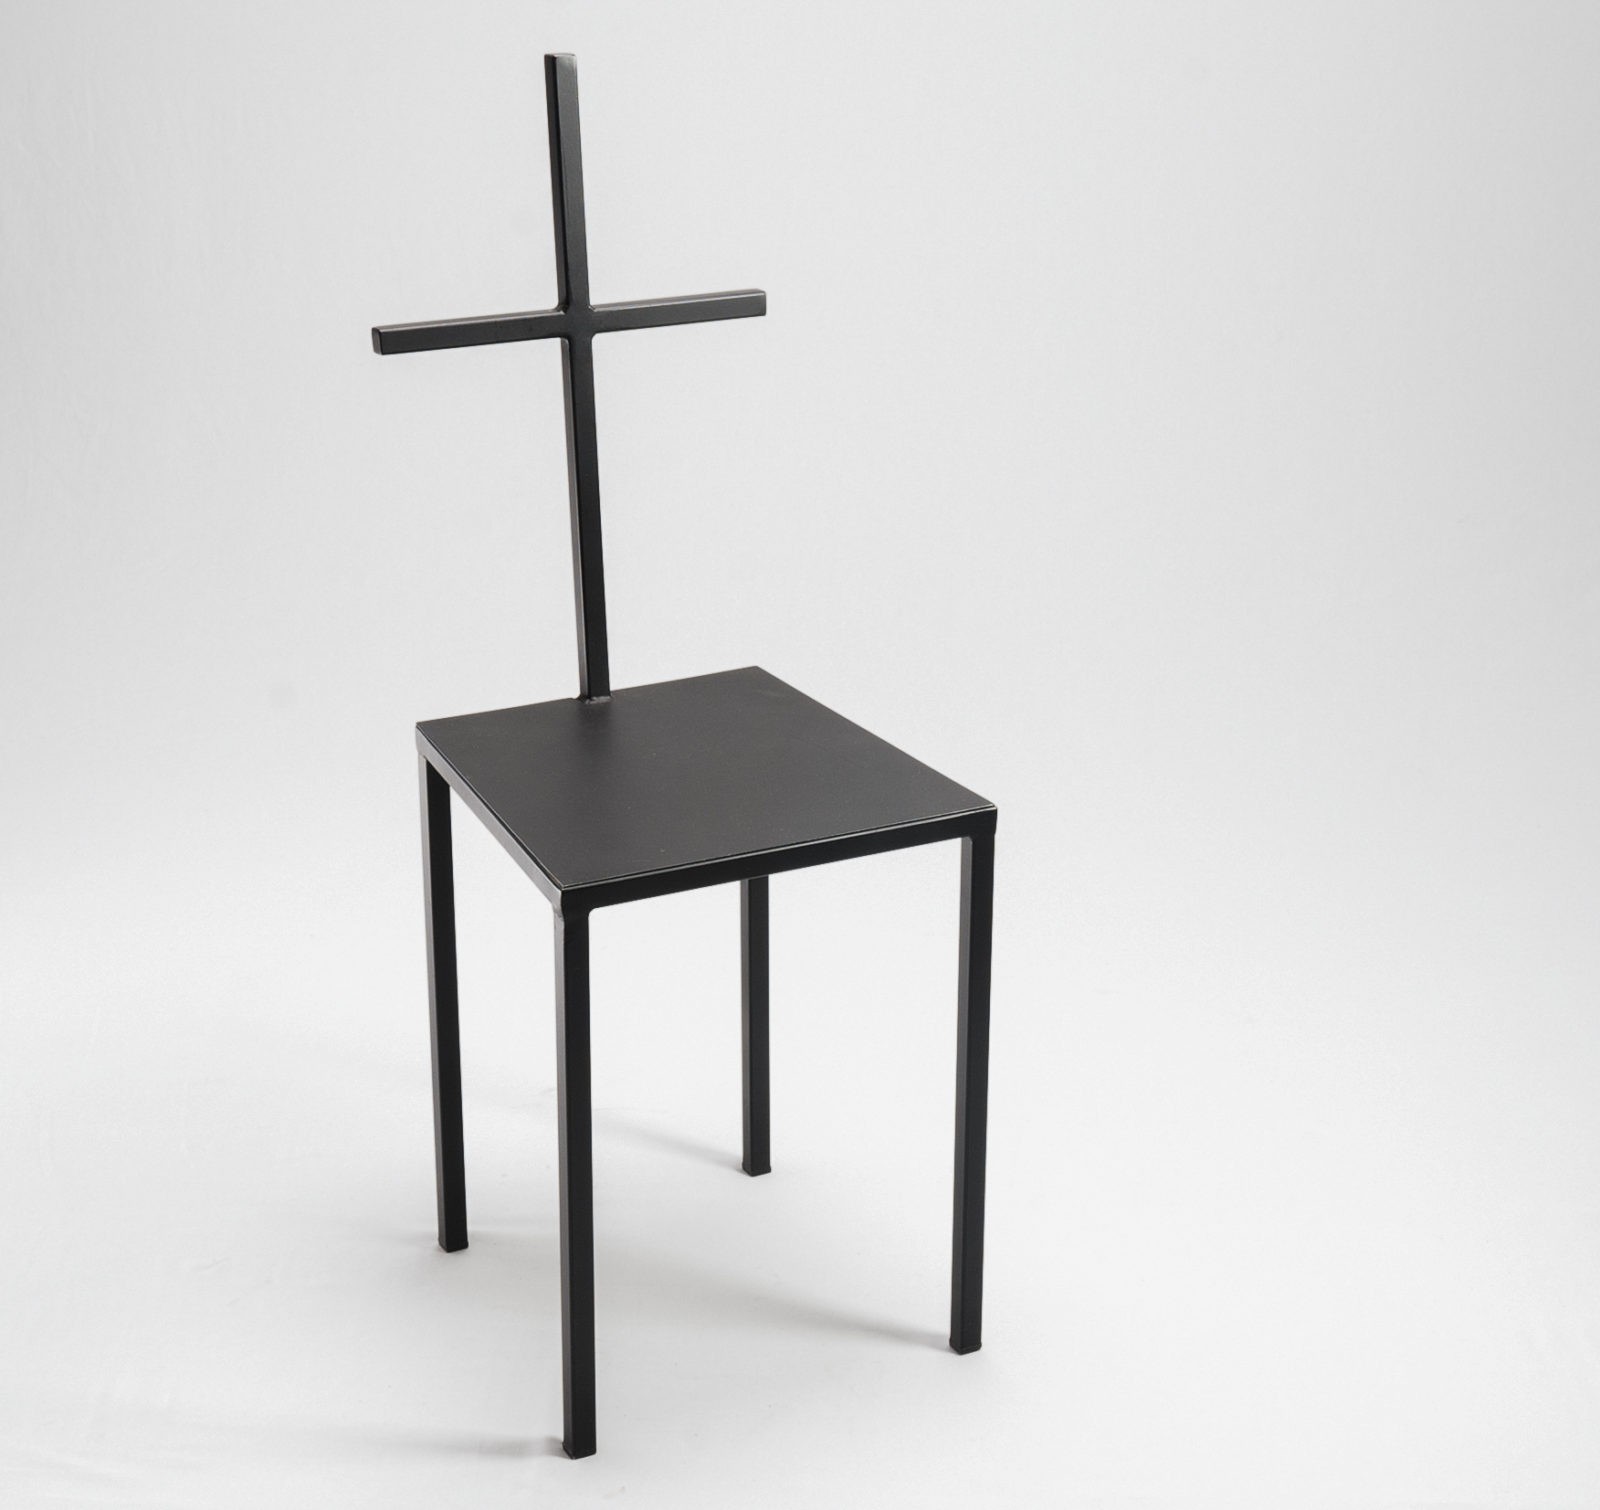 Sin chair design.